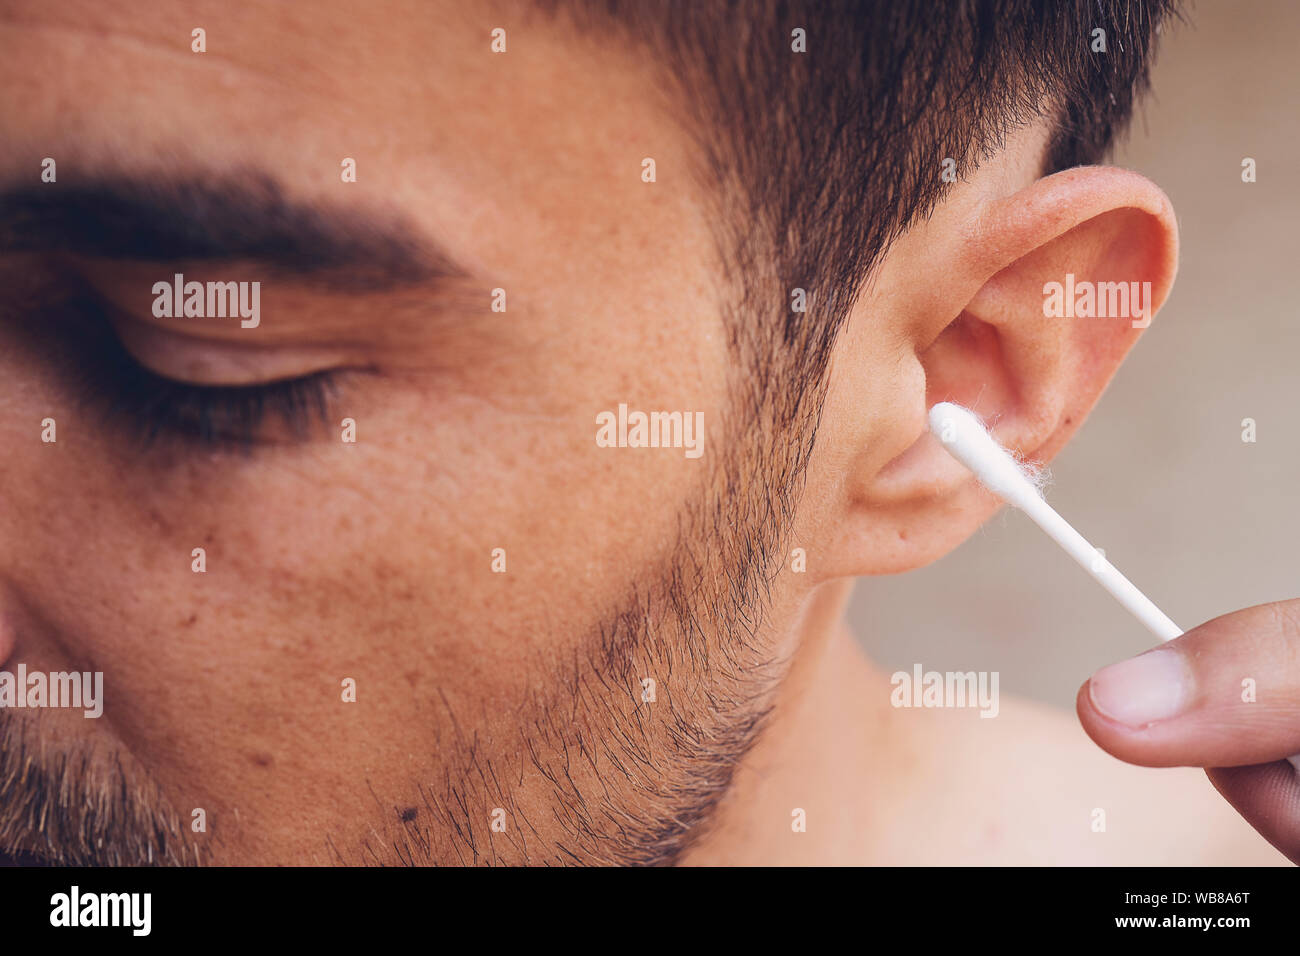 Mann über seine Ohren zu reinigen mit Q-Tip, Wattestäbchen. Hygiene  essentials Konzept. Entfernen von Wachs von Ohr Stockfotografie - Alamy